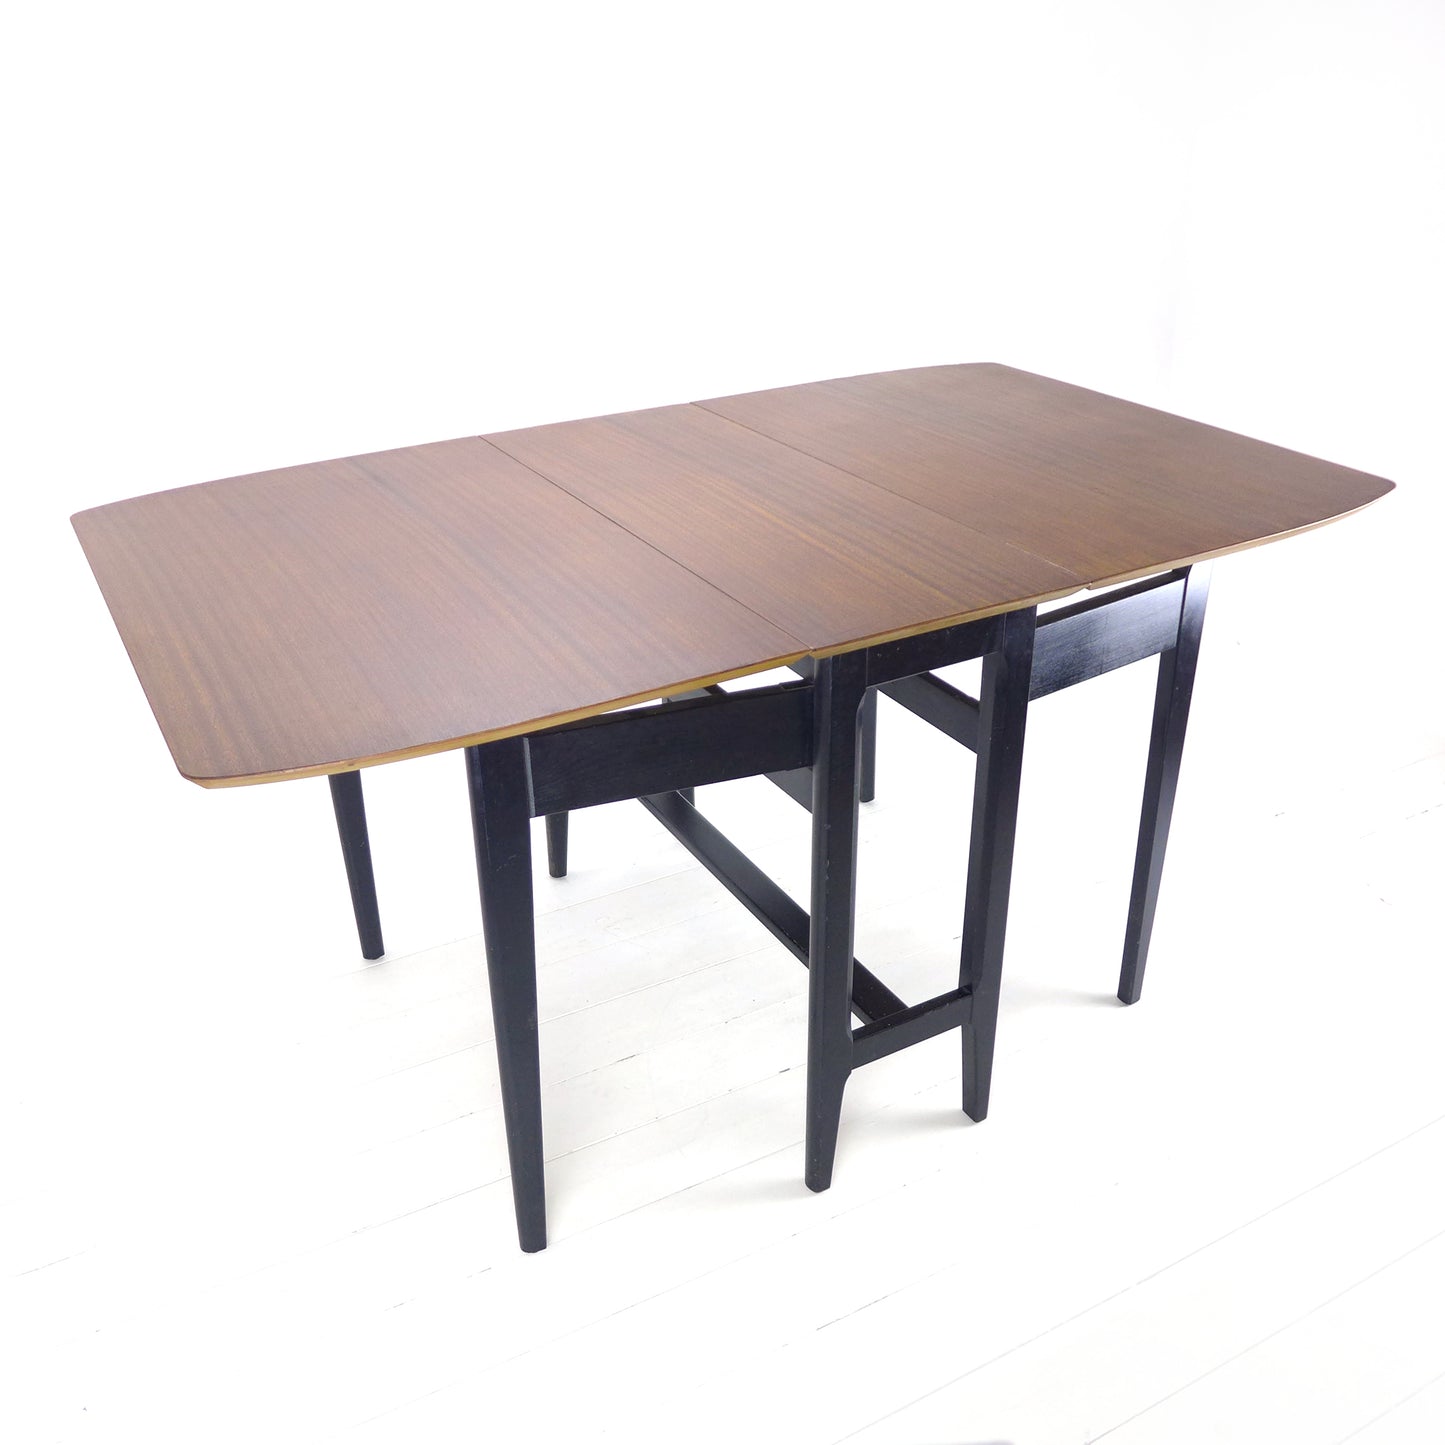 Mid Century Teak Dining Table in Teak - Gateleg/Folding - Kitchen/Home Office